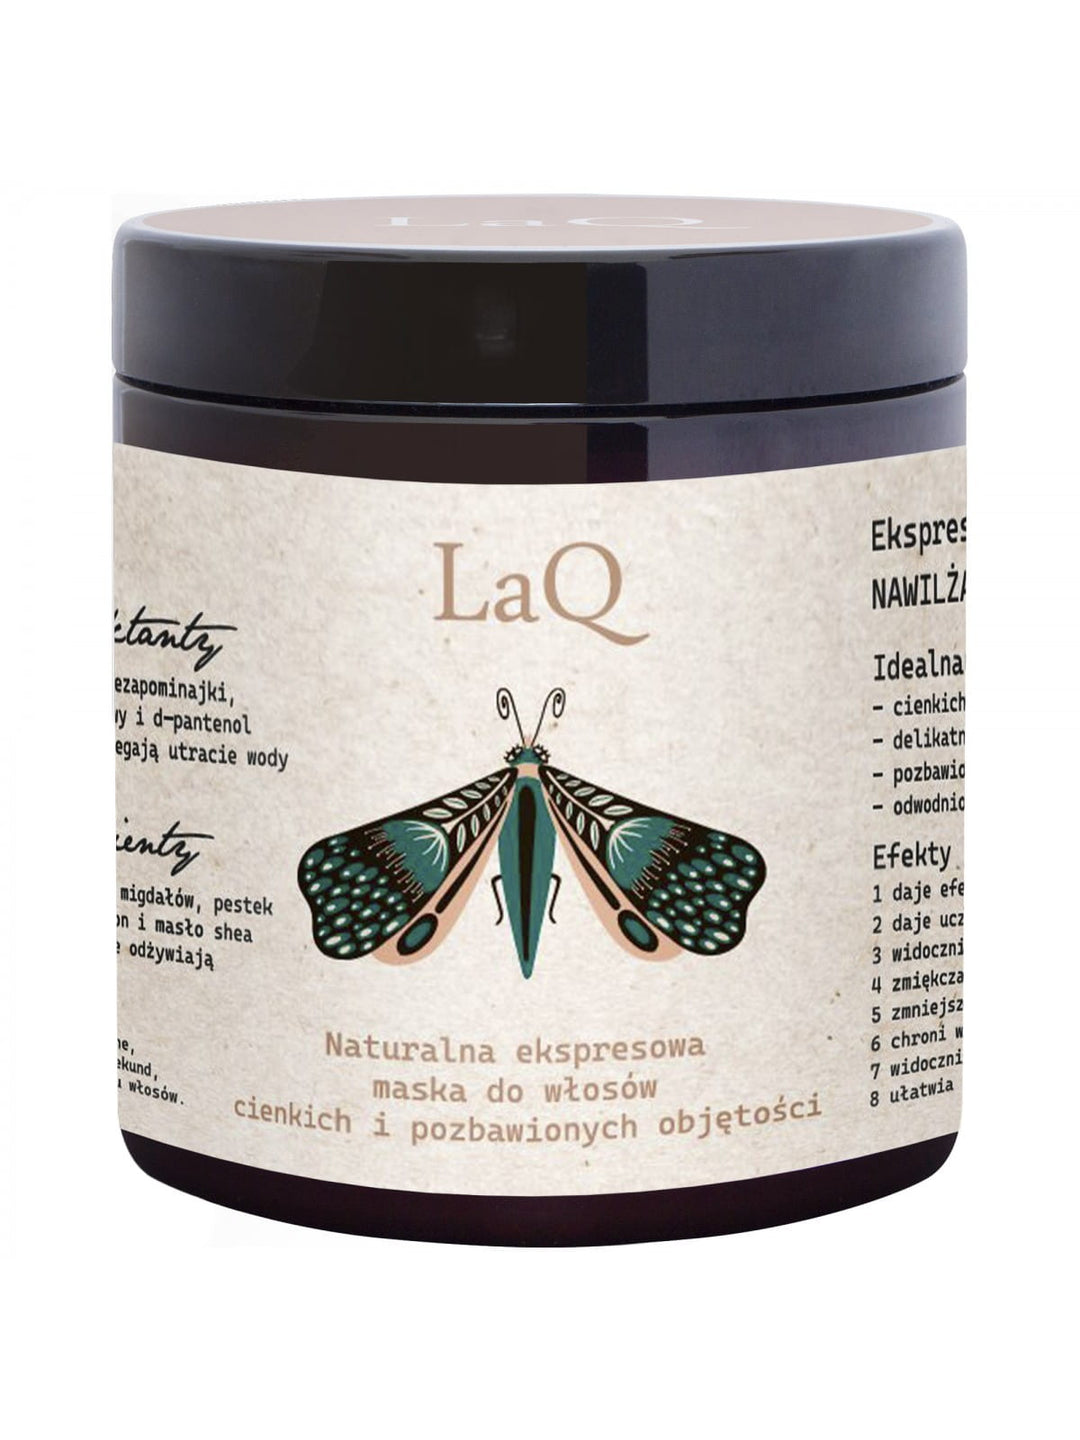 LAQ Naturalna ekspresowa maska do włosów cienkich i pozbawionych objętości 250ml